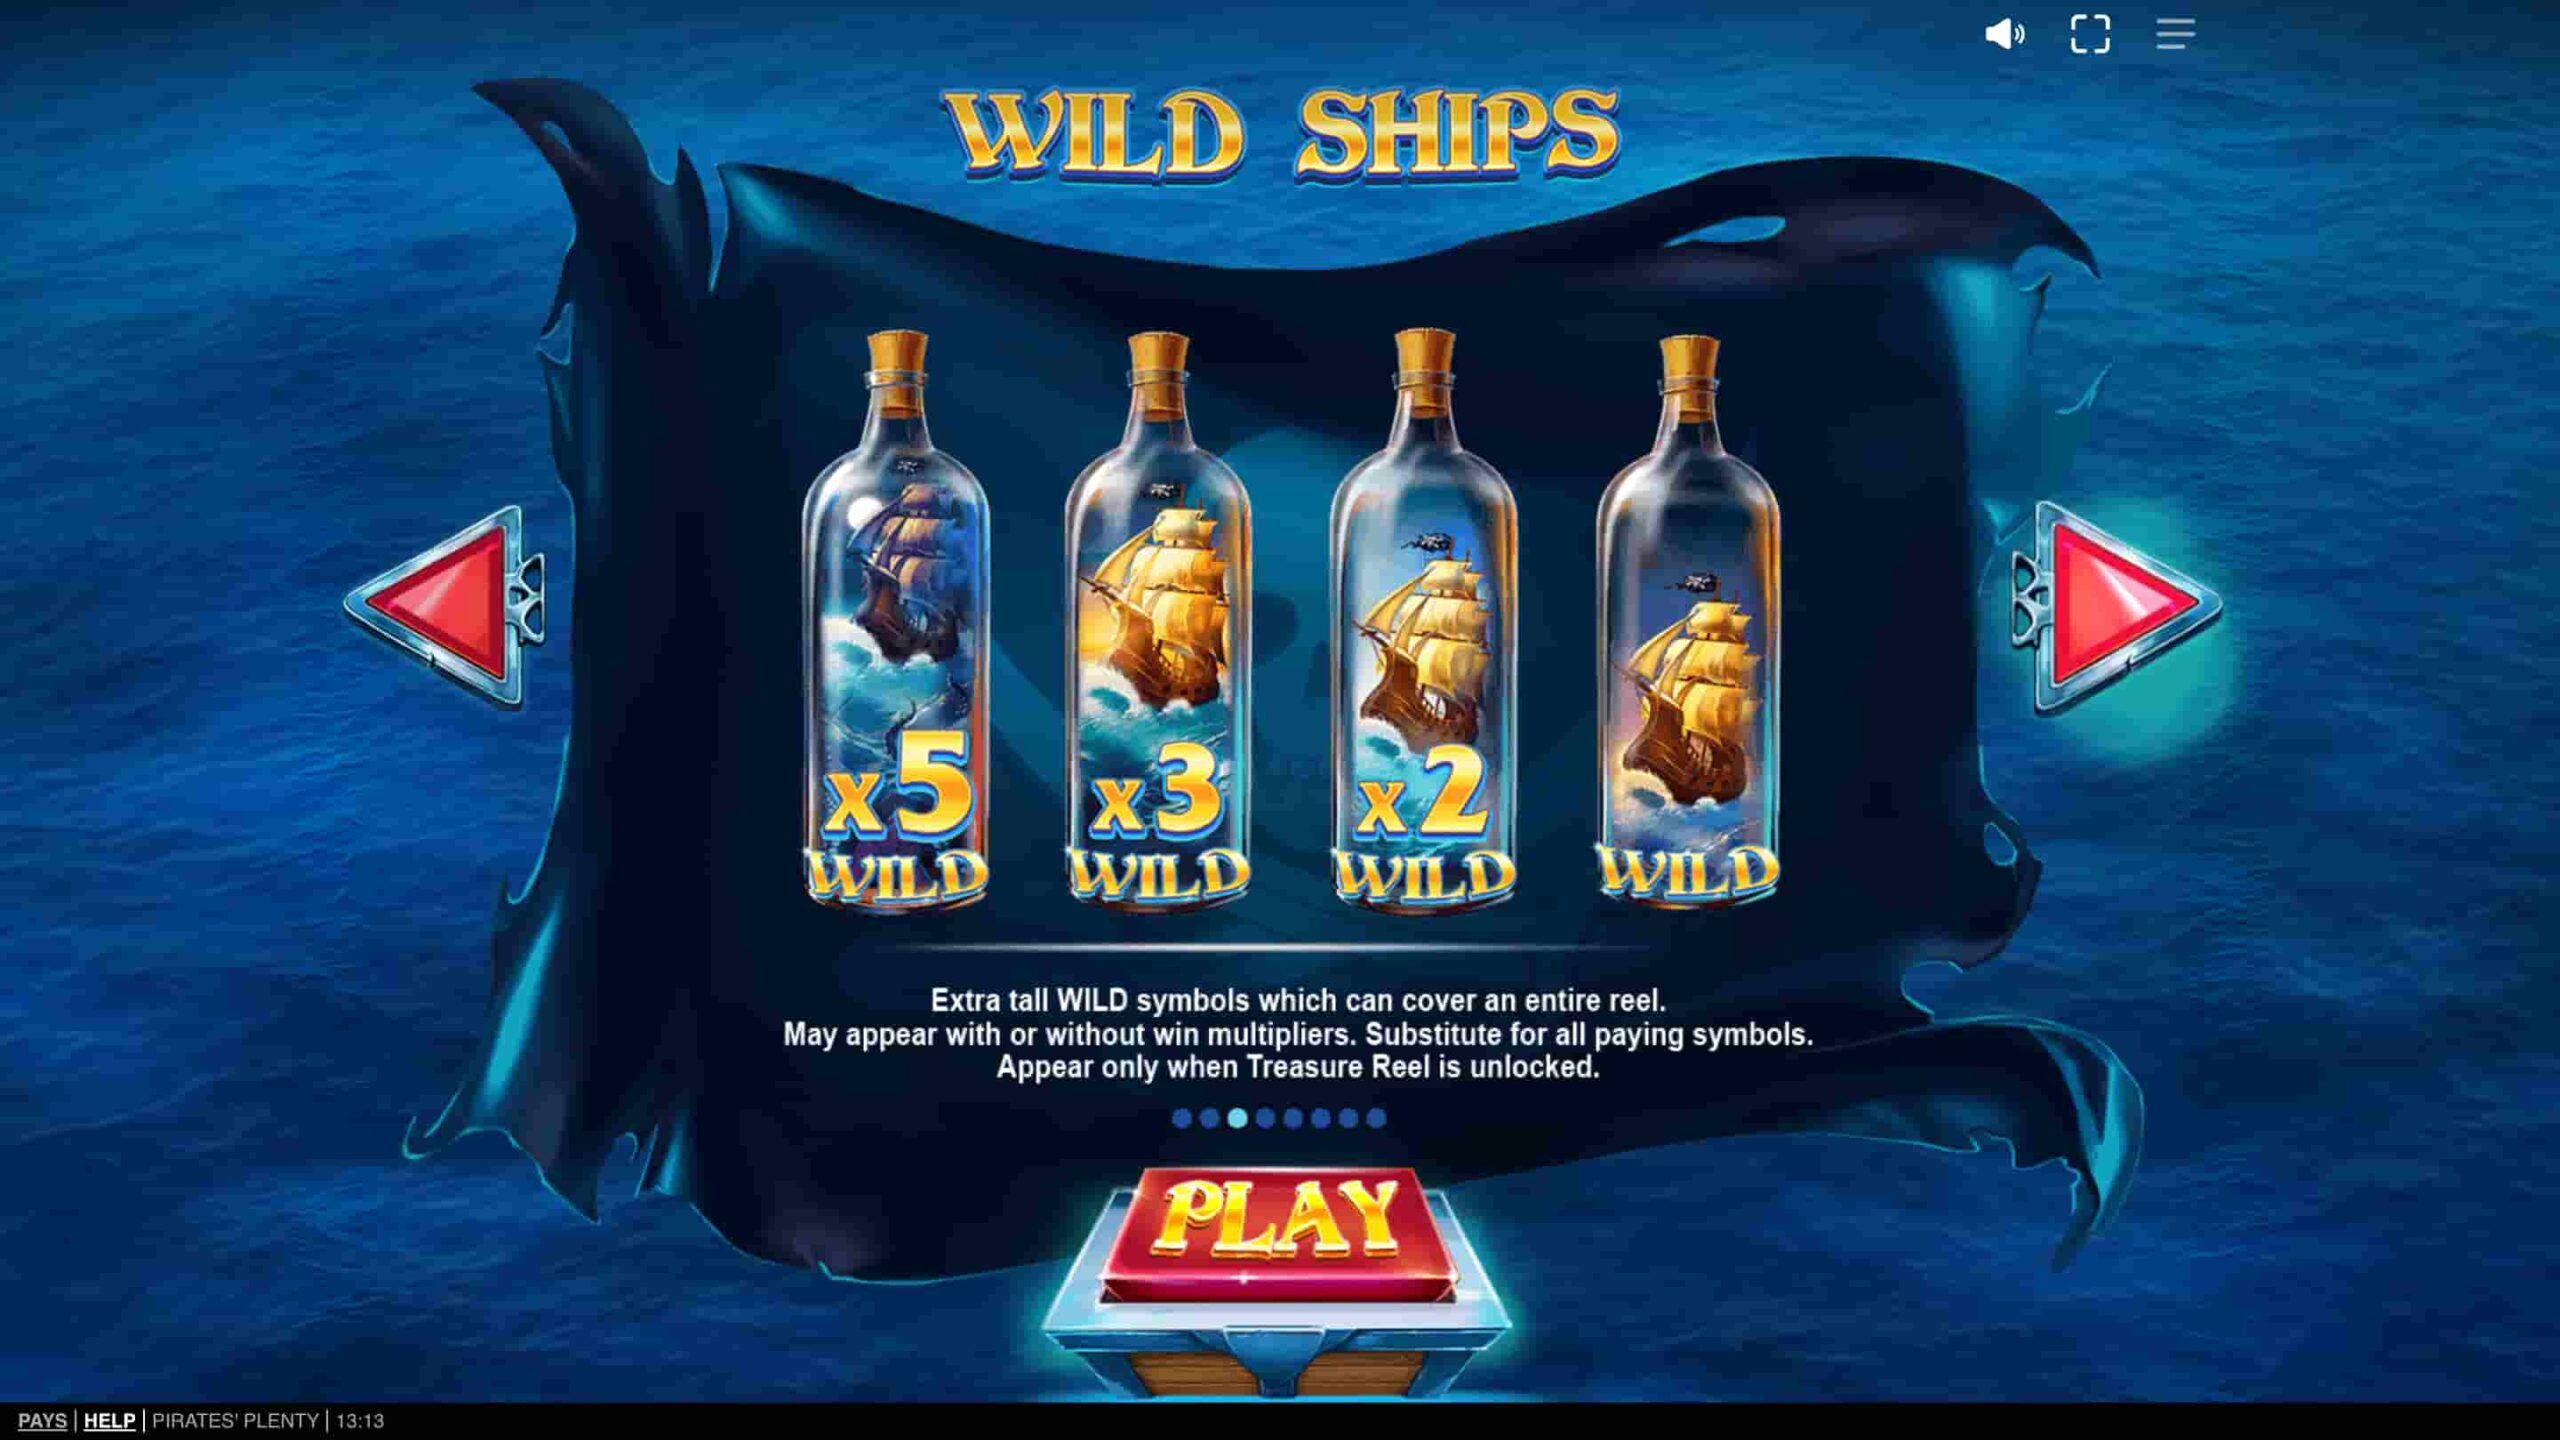 Pirates Plenty slot screenshot 5